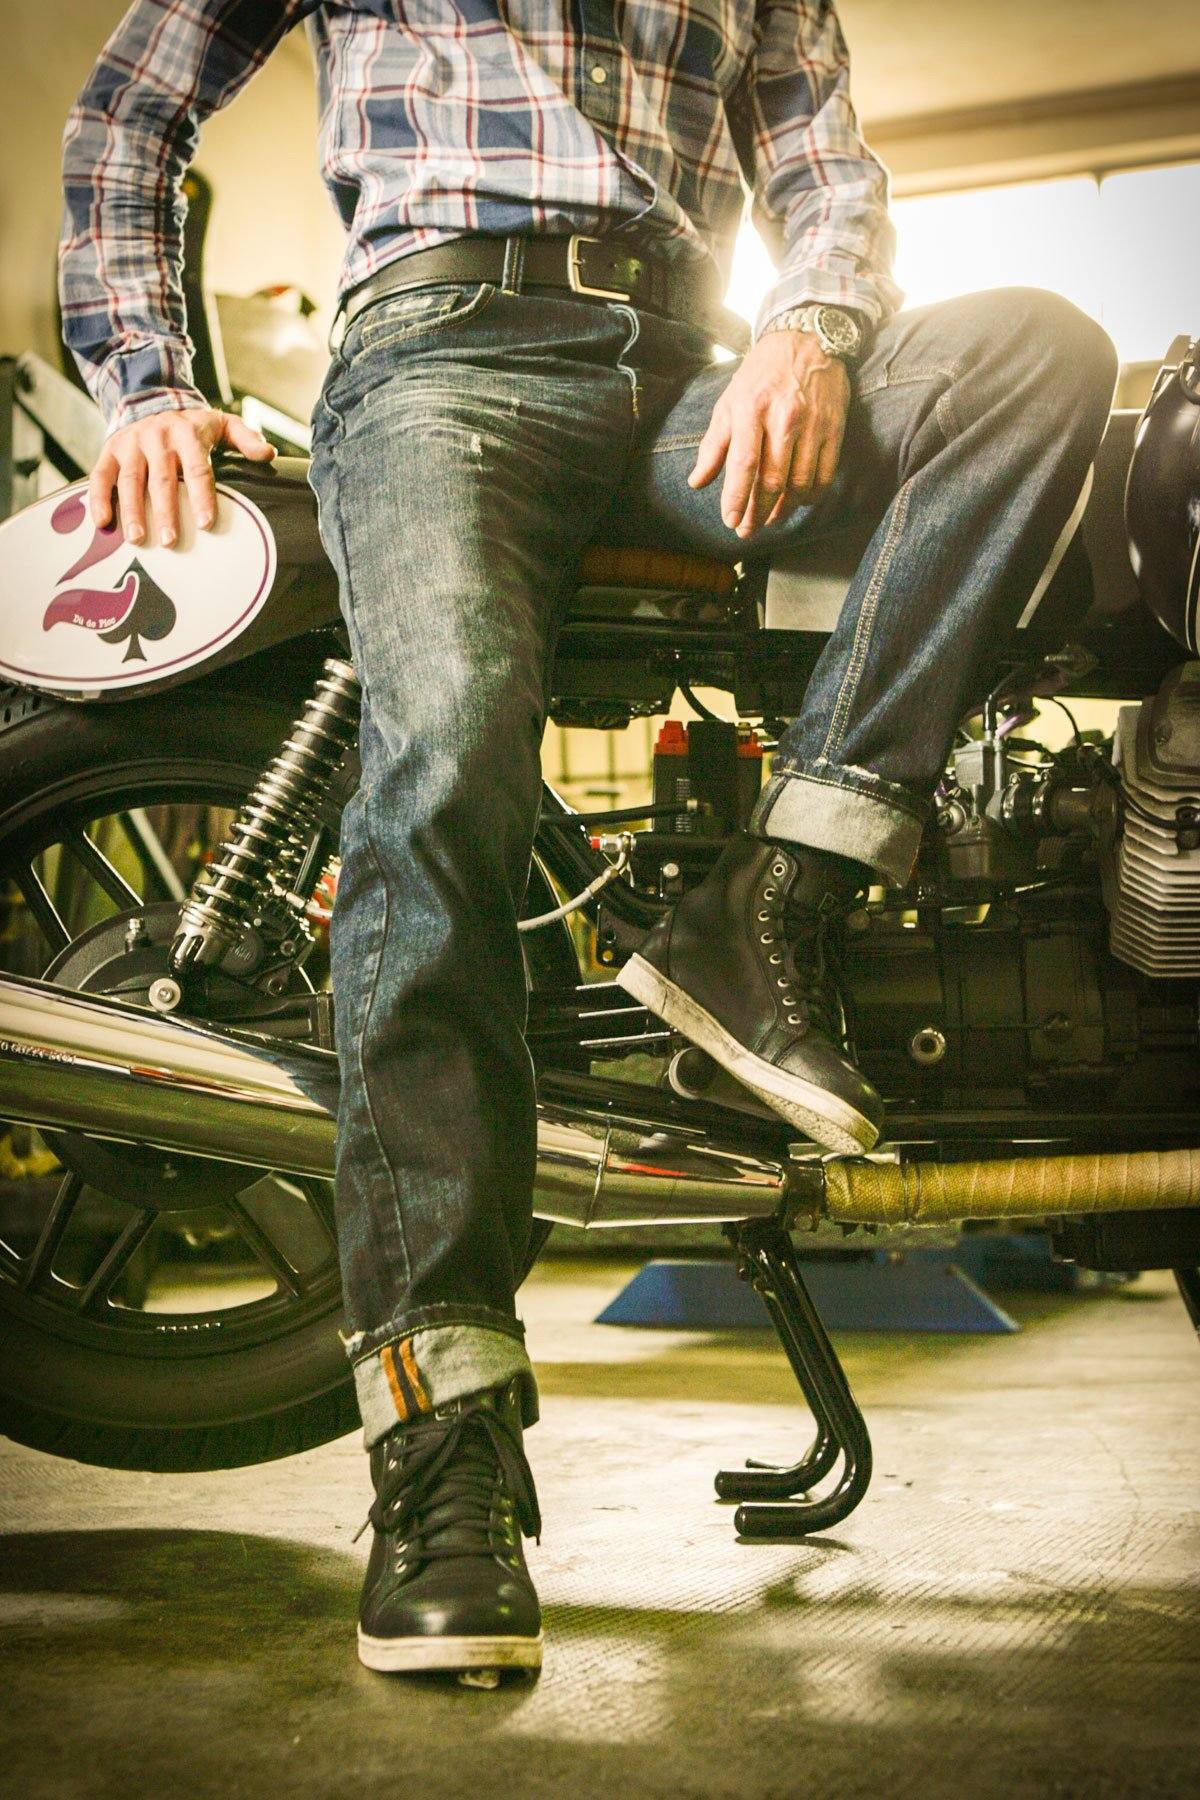 SPAZIO MOTO moto, scooter, quad nuovi e usati, abbigliamento accessori e  caschi, orbea ebike, abbigliamento e accessori mtb officina riparazione moto  scooter e quad